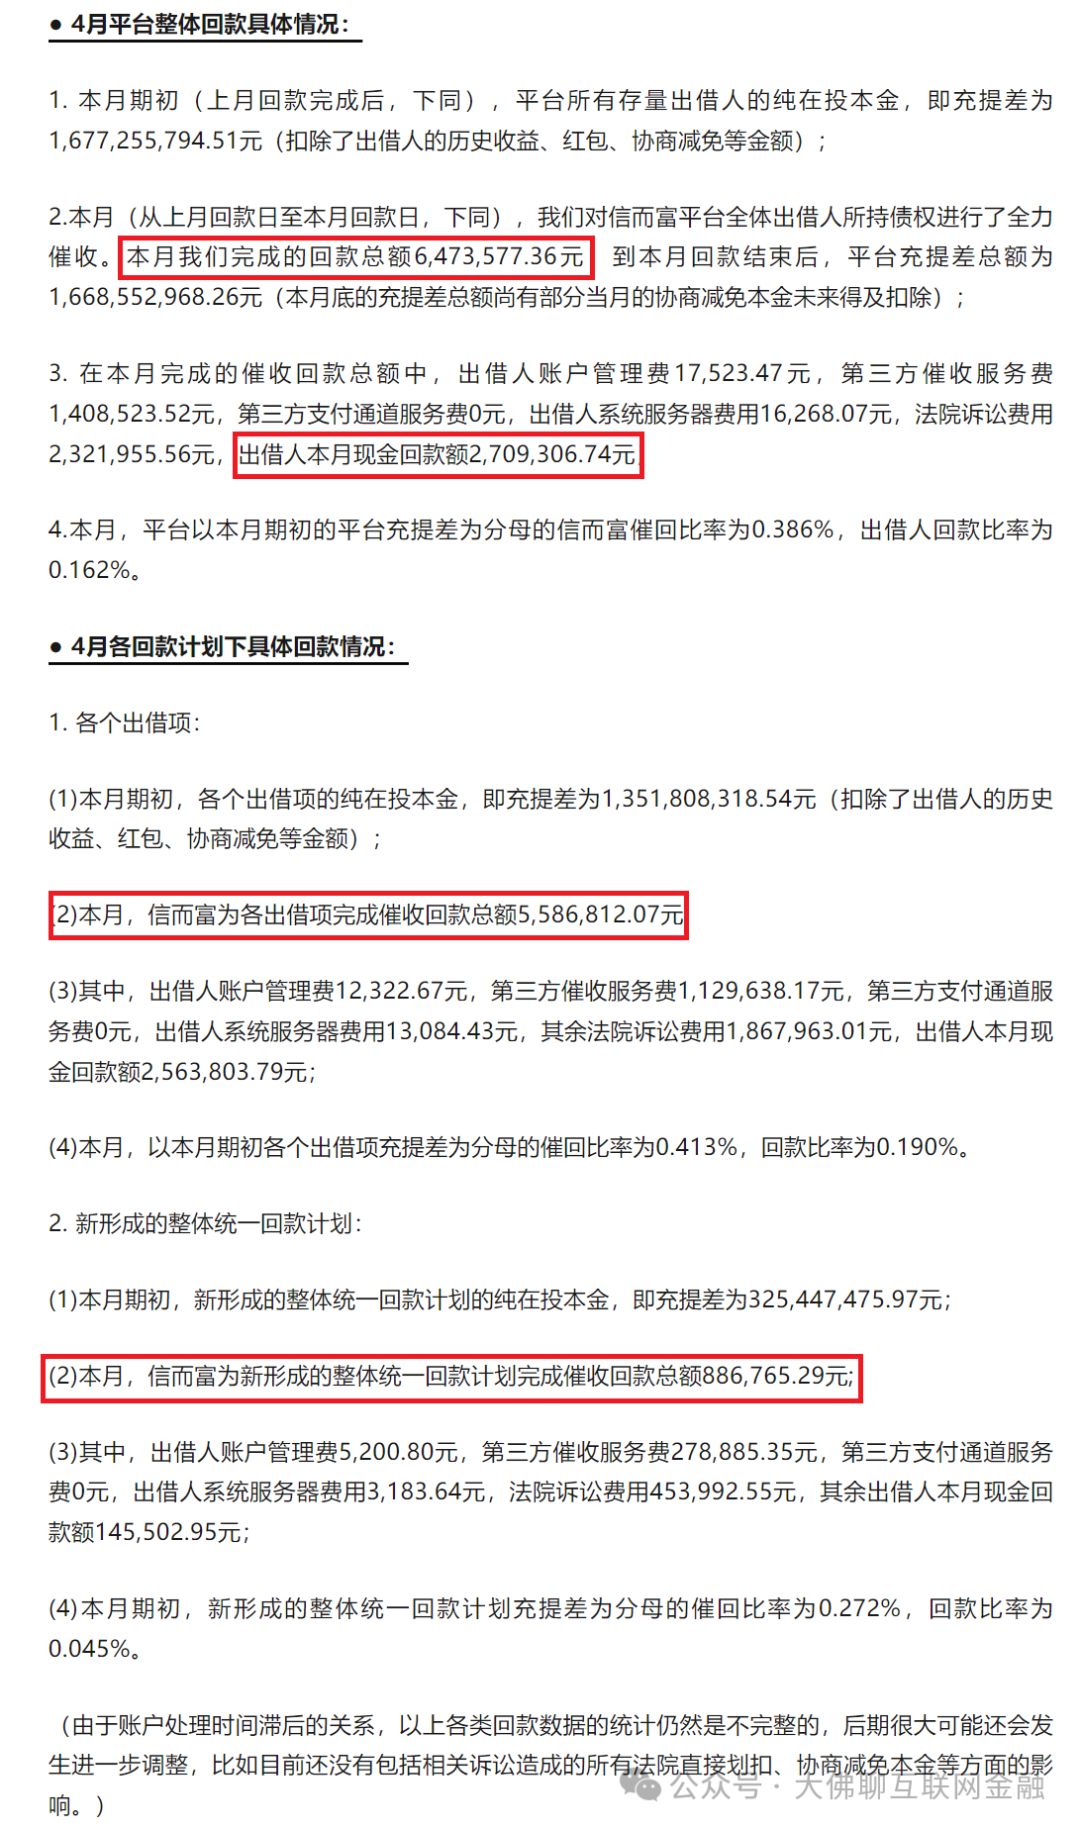 人俞庆龙等27人涉嫌非法吸收公众存款罪一案移送审查起诉的公告发布